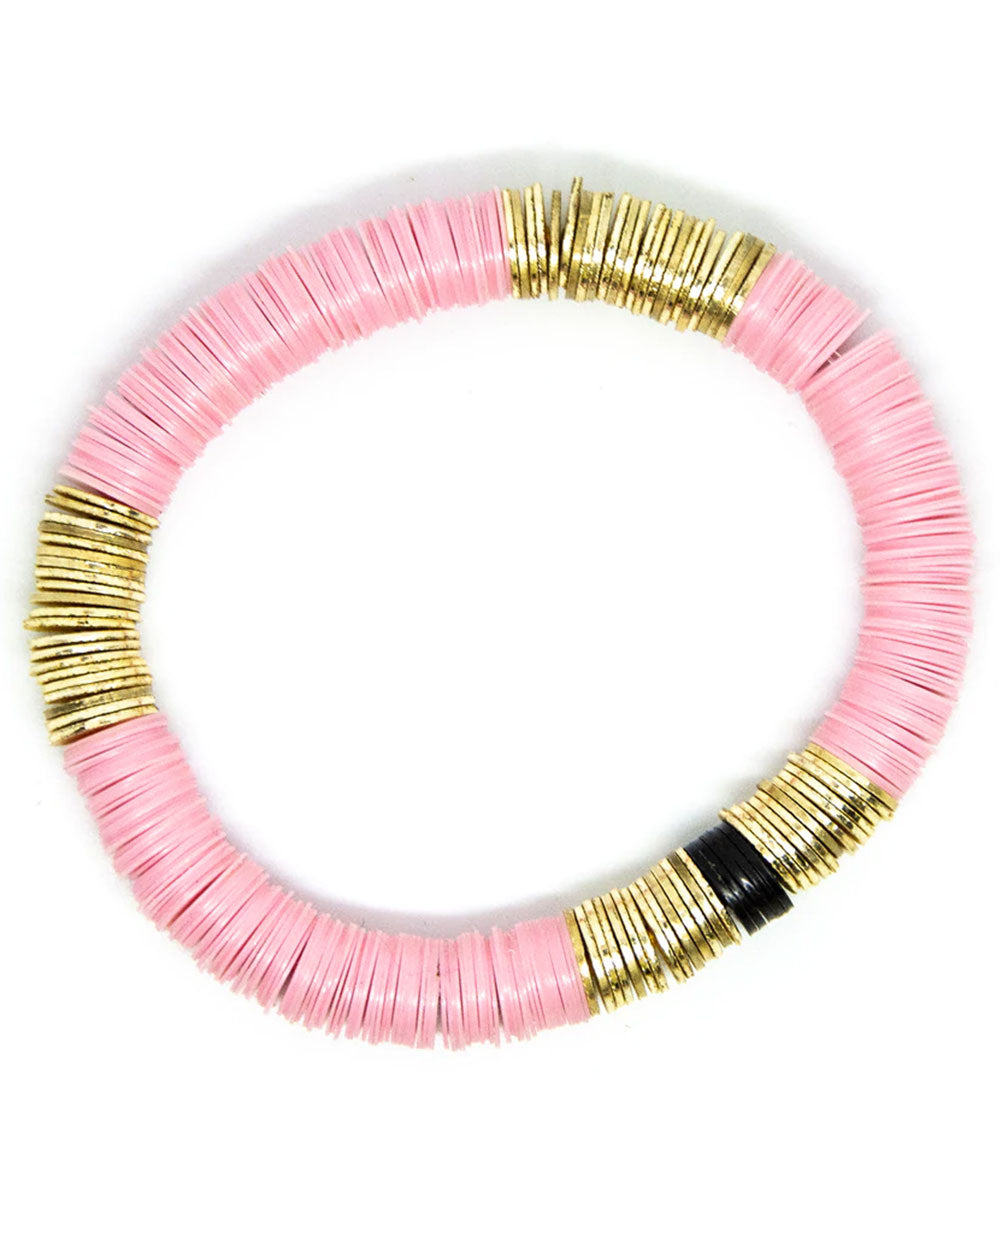 14k Gold and Light Pink Vinyl Stretch Bracelet